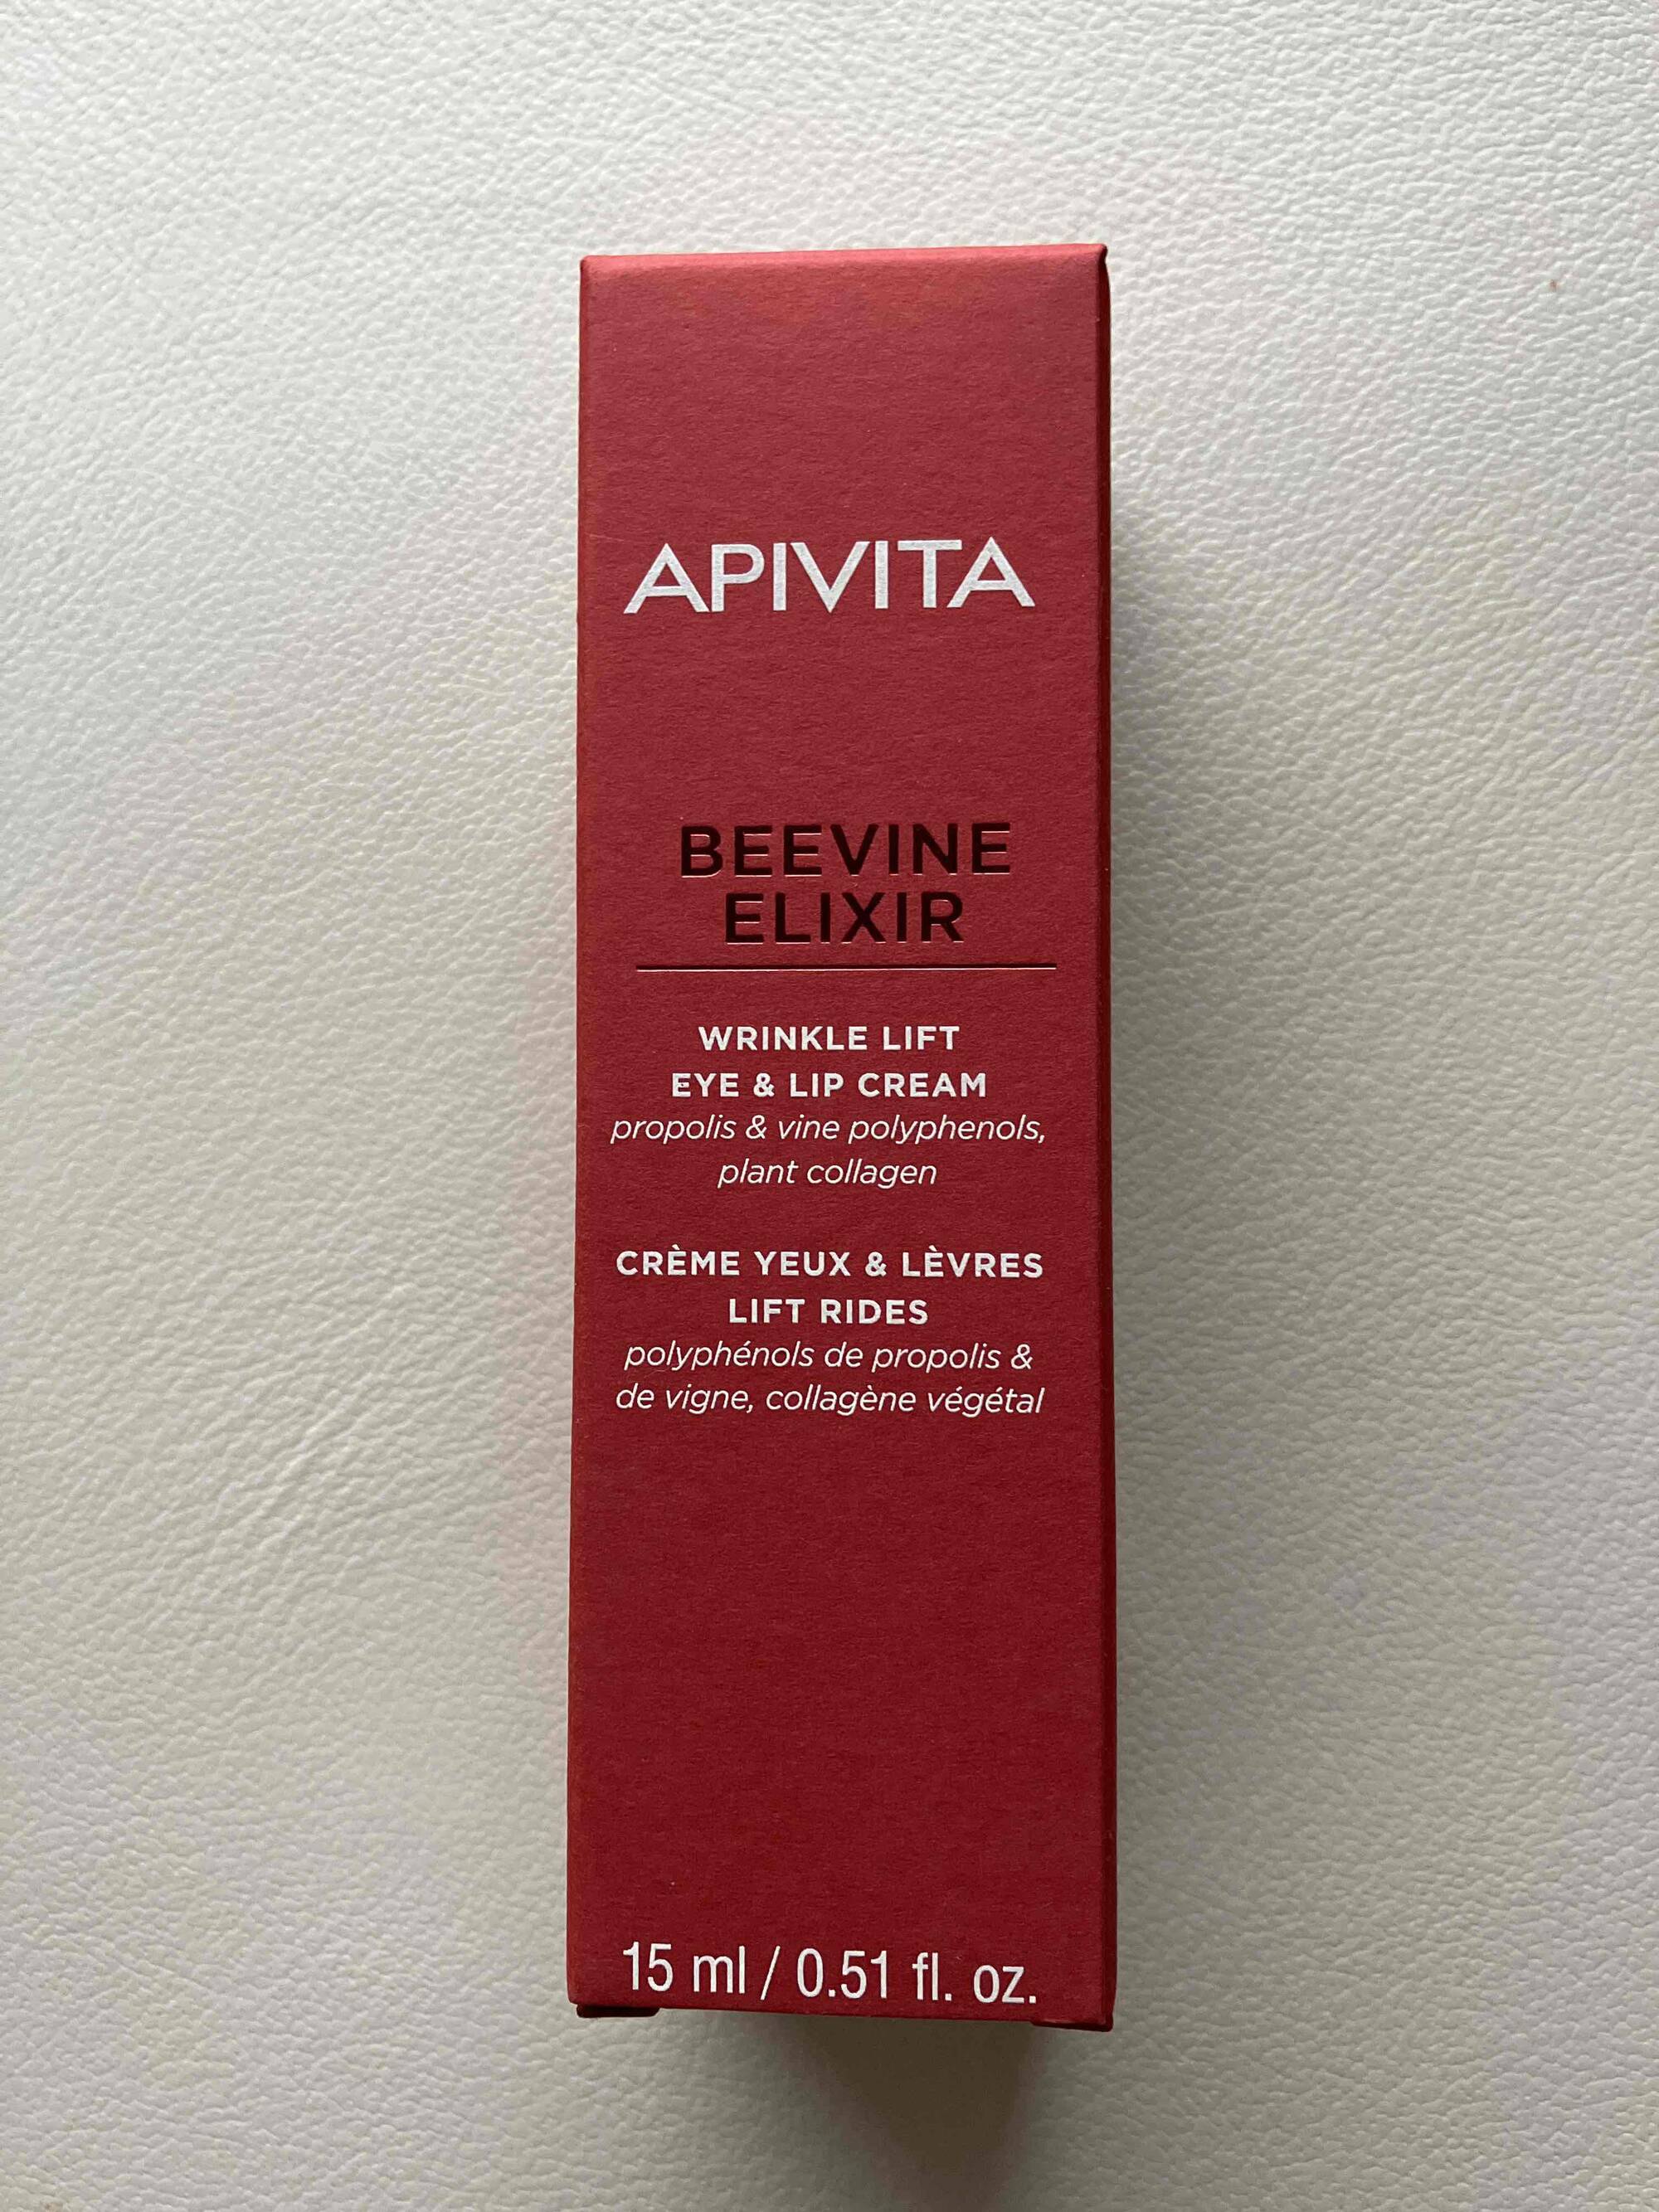 APIVITA - Beevine élixir - Crème yeux et lèvres